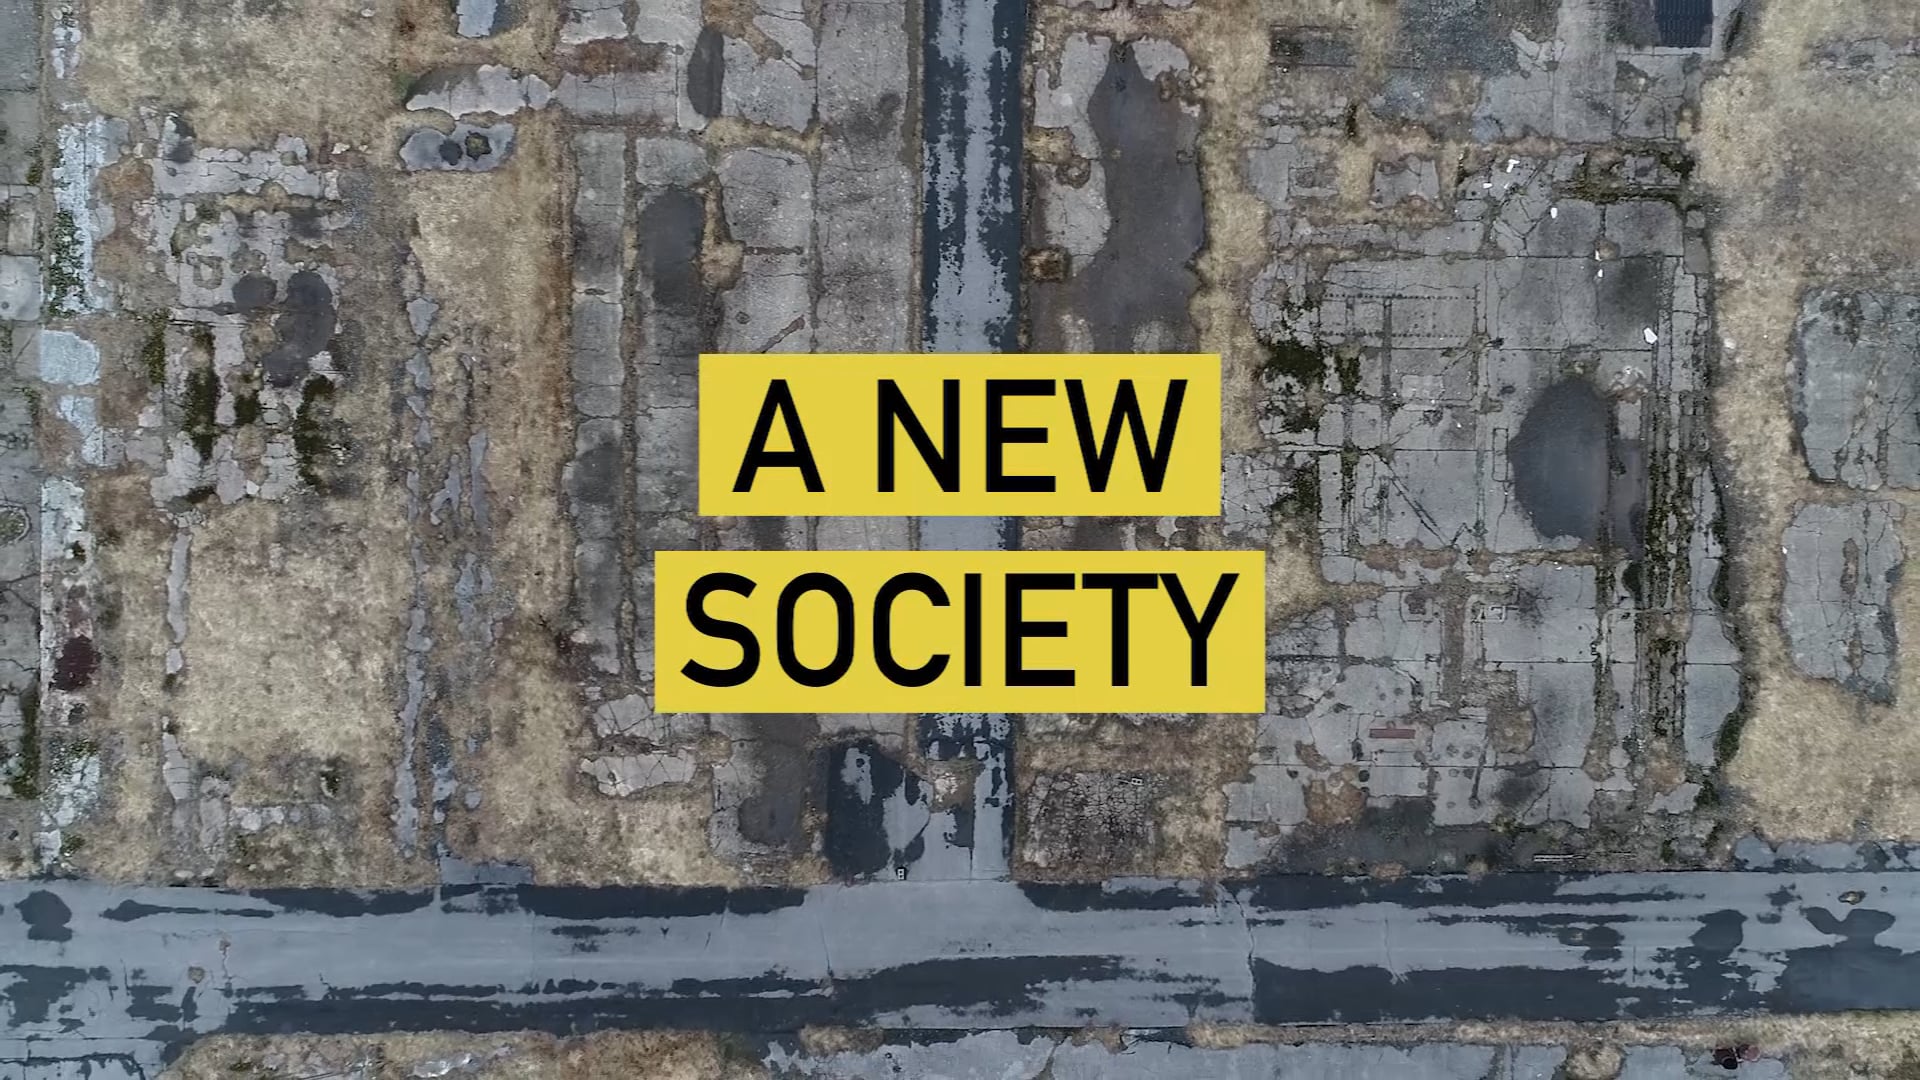 New society. Creating New Society.